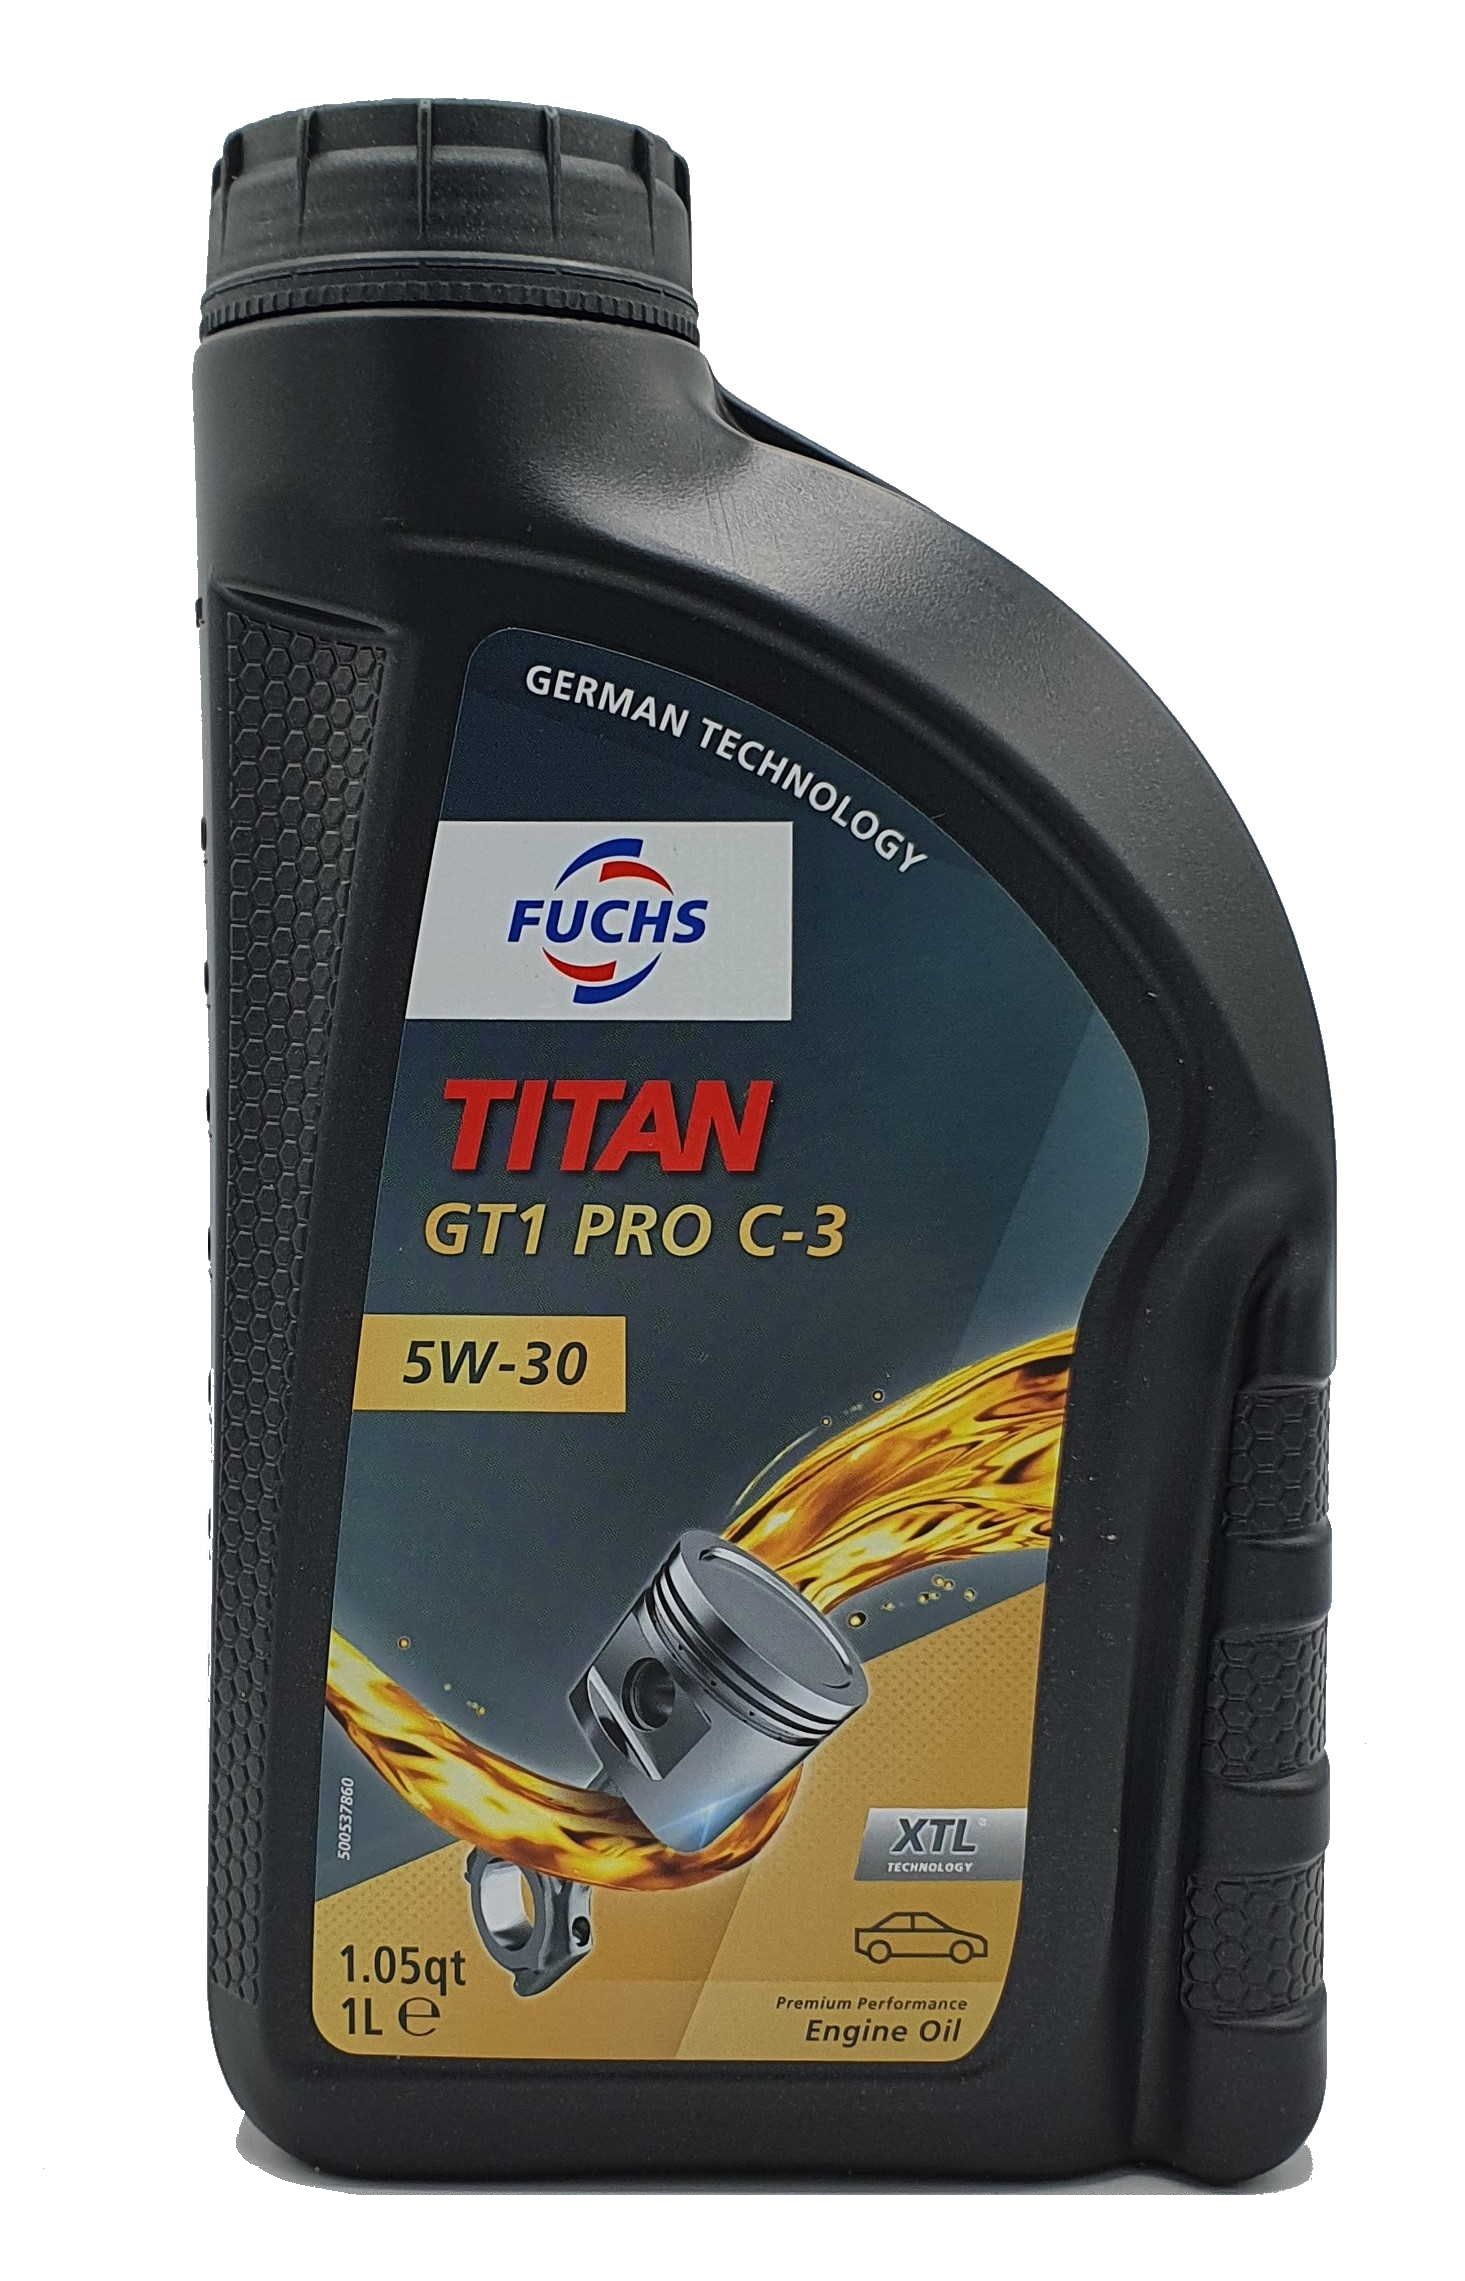 Fuchs Titan GT1 PRO C-3 5W-30 1 Liter